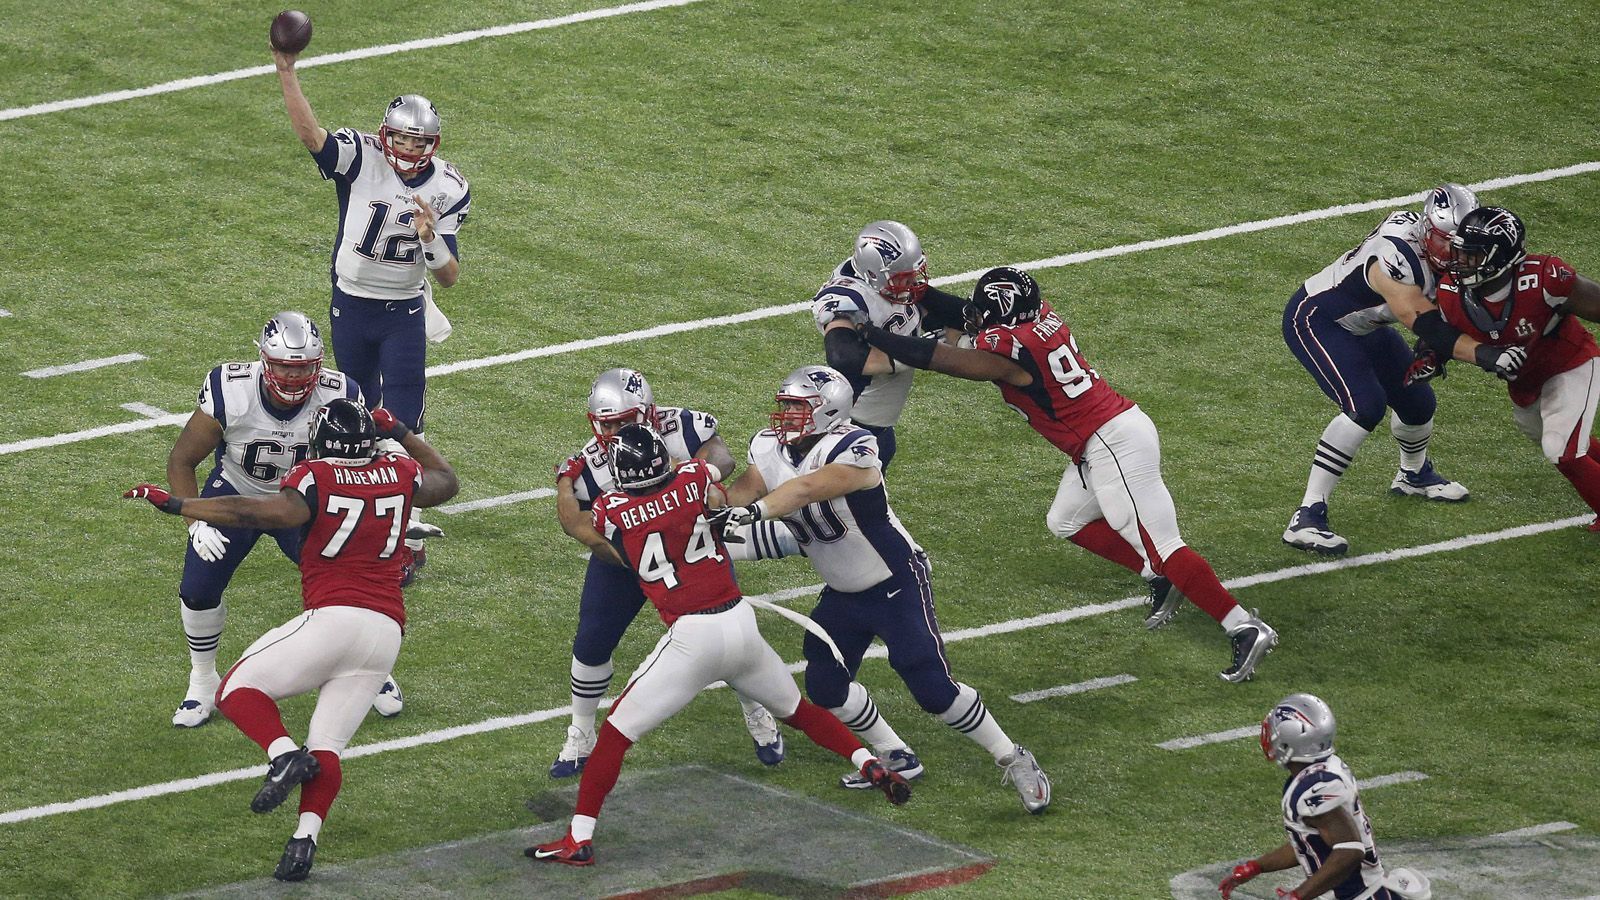 
                <strong>Super Bowl LI (5. Februar 2017, Houston)</strong><br>
                New England Patriots – Atlanta Falcons 34:28 Im Super Bowl LI gelang Tom Brady und den Patriots das größte Comeback der Super-Bowl-Geschichte. Als die Falcons zu Beginn des dritten Quarters mit 28:3 führten, schien das Spiel bereits entschieden zu sein. Nie zuvor wurde im Super Bowl ein Rückstand von mehr als zehn Punkten aufgeholt. Doch Brady, der auch diesmal zum MVP ernannt wurde, schaffte das Unmögliche. 50 Sekunden vor Spielende gelang ein Touchdown in Verbindung mit der Two-Point-Conversion - Gleichstand. In der Overtime erlief James White den Score zum Sieg. Mit seinem fünften Super-Bowl-Sieg stellte Brady einen Rekord auf.
              